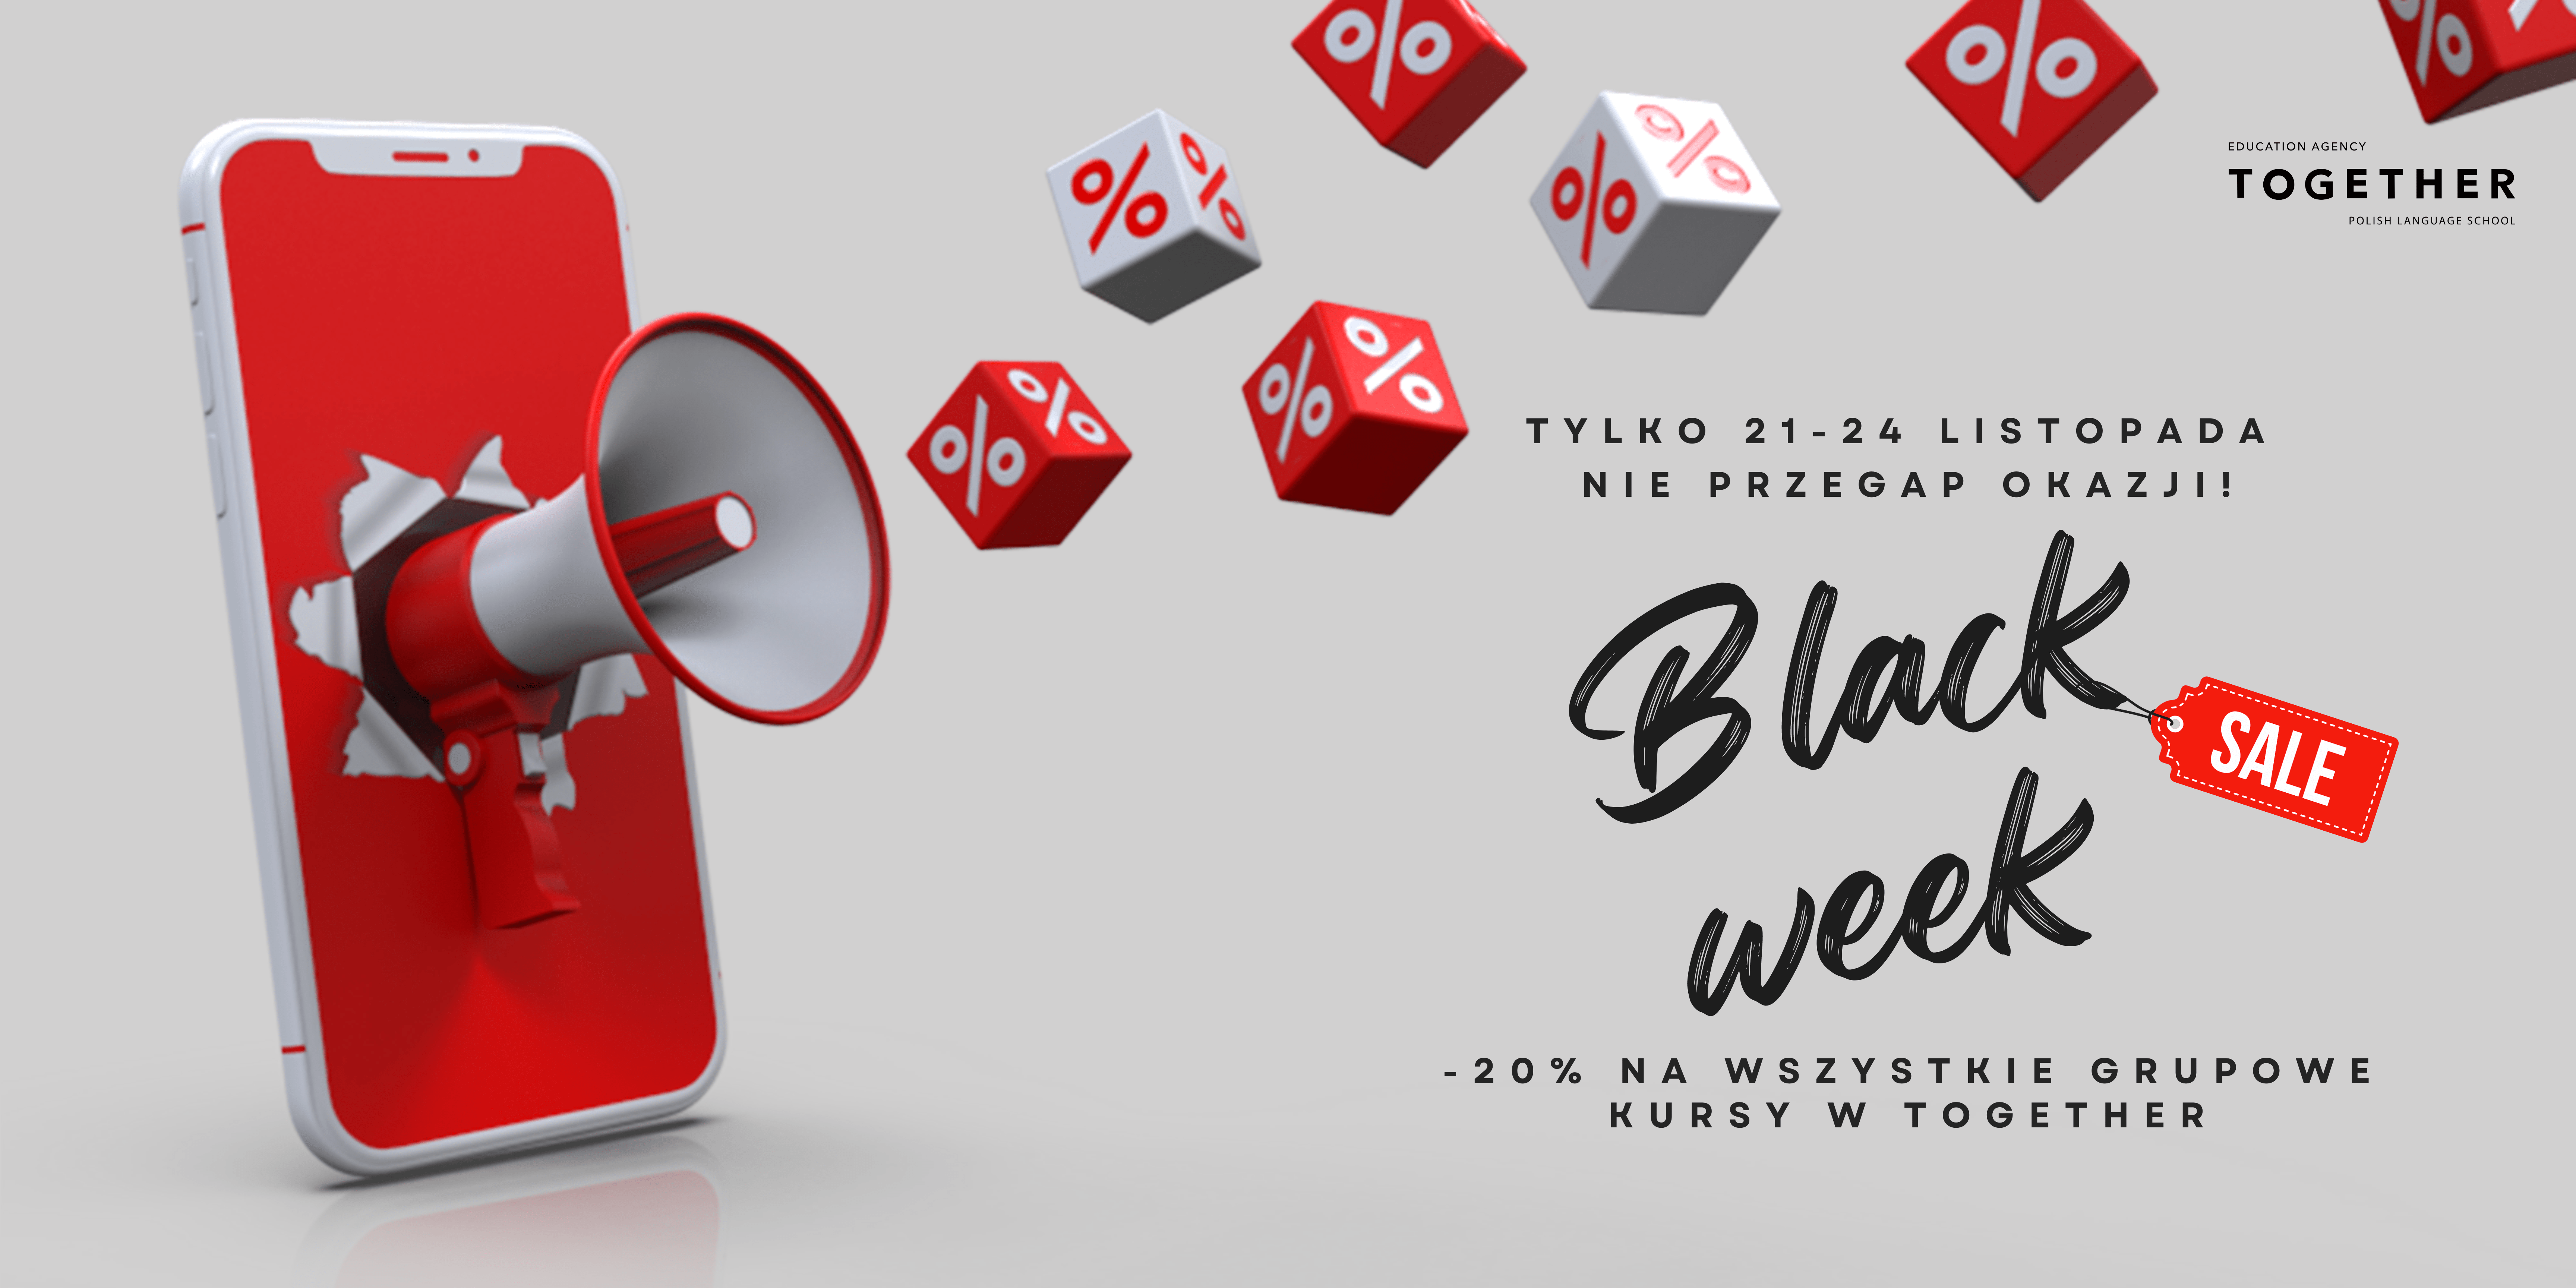 Black Week - Otrzymaj 20% zniżki